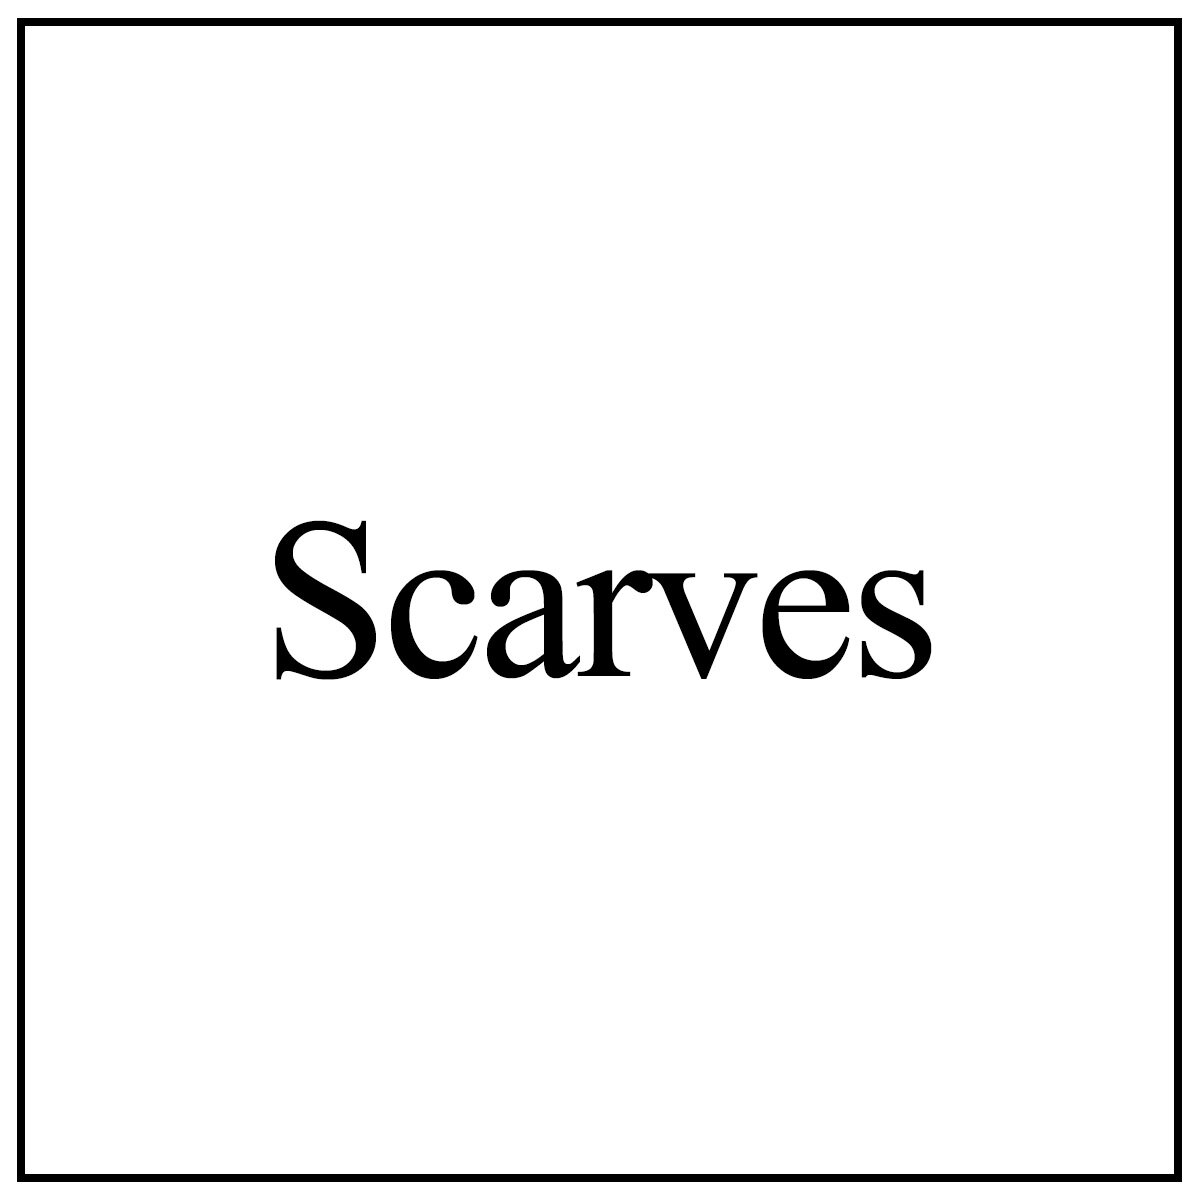 scarves.jpg